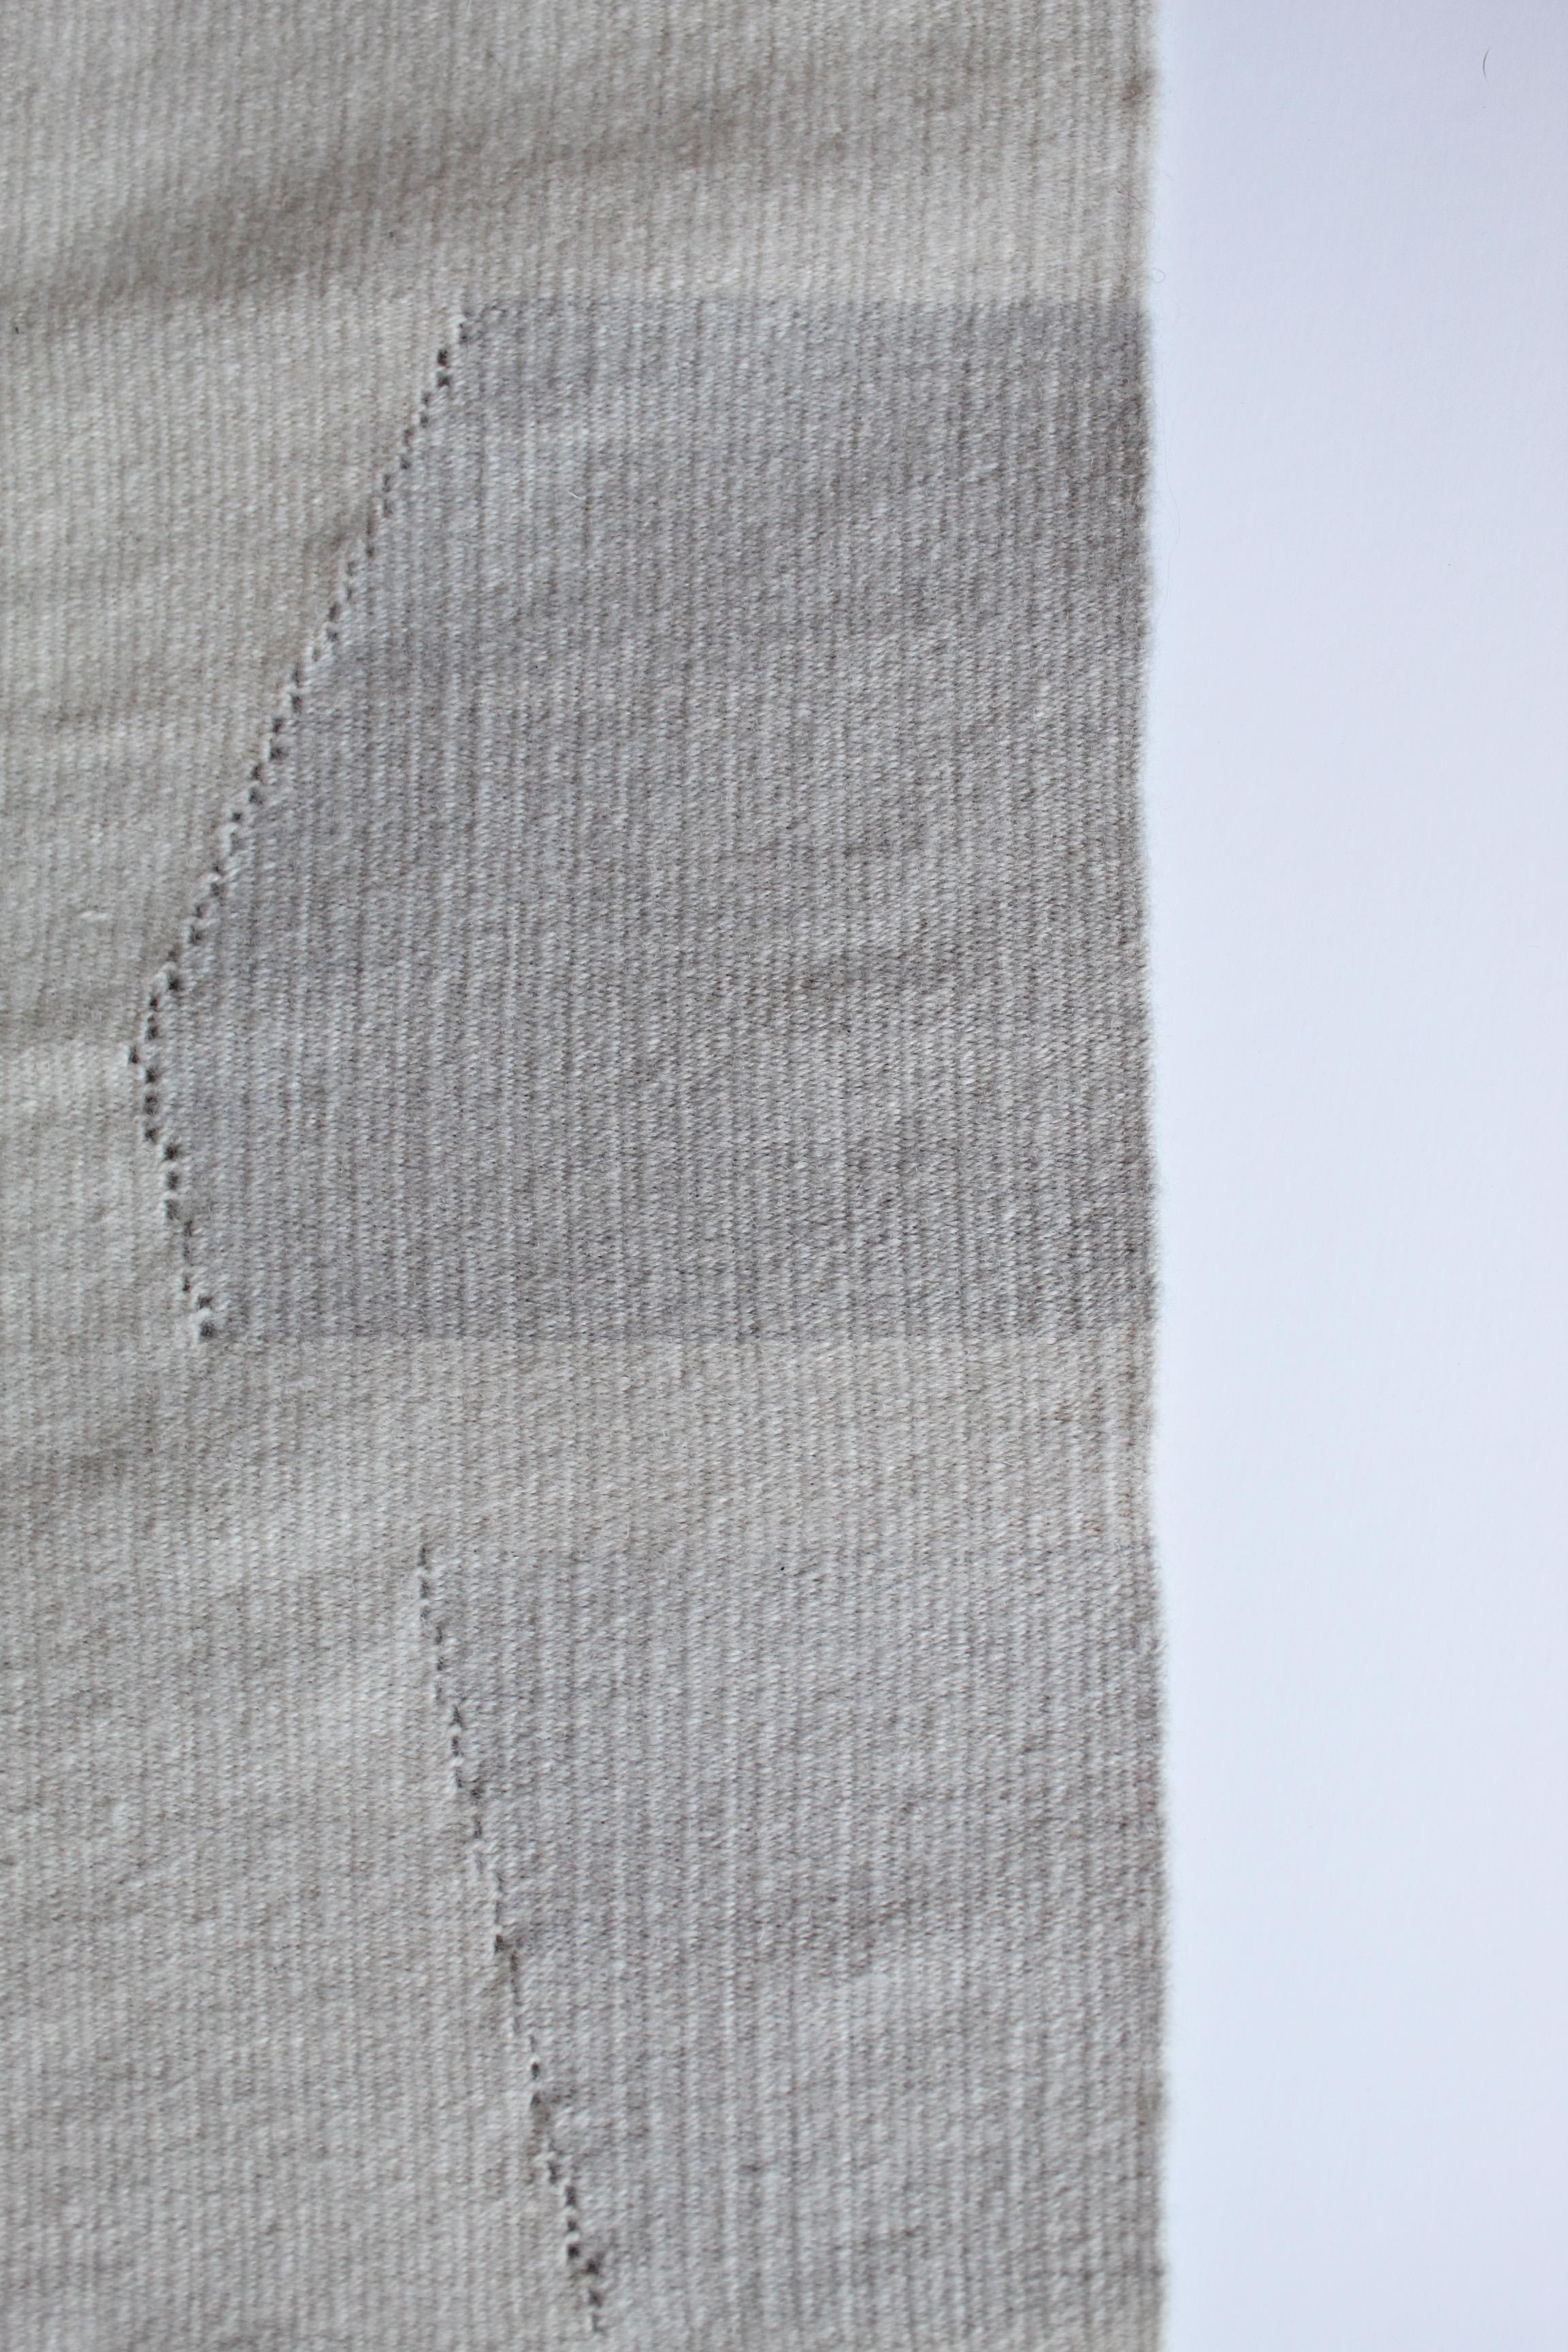 Zeitgenössischer handgewebter Wollteppich, grau getönter Kelim oder Wandteppich (Moderne)